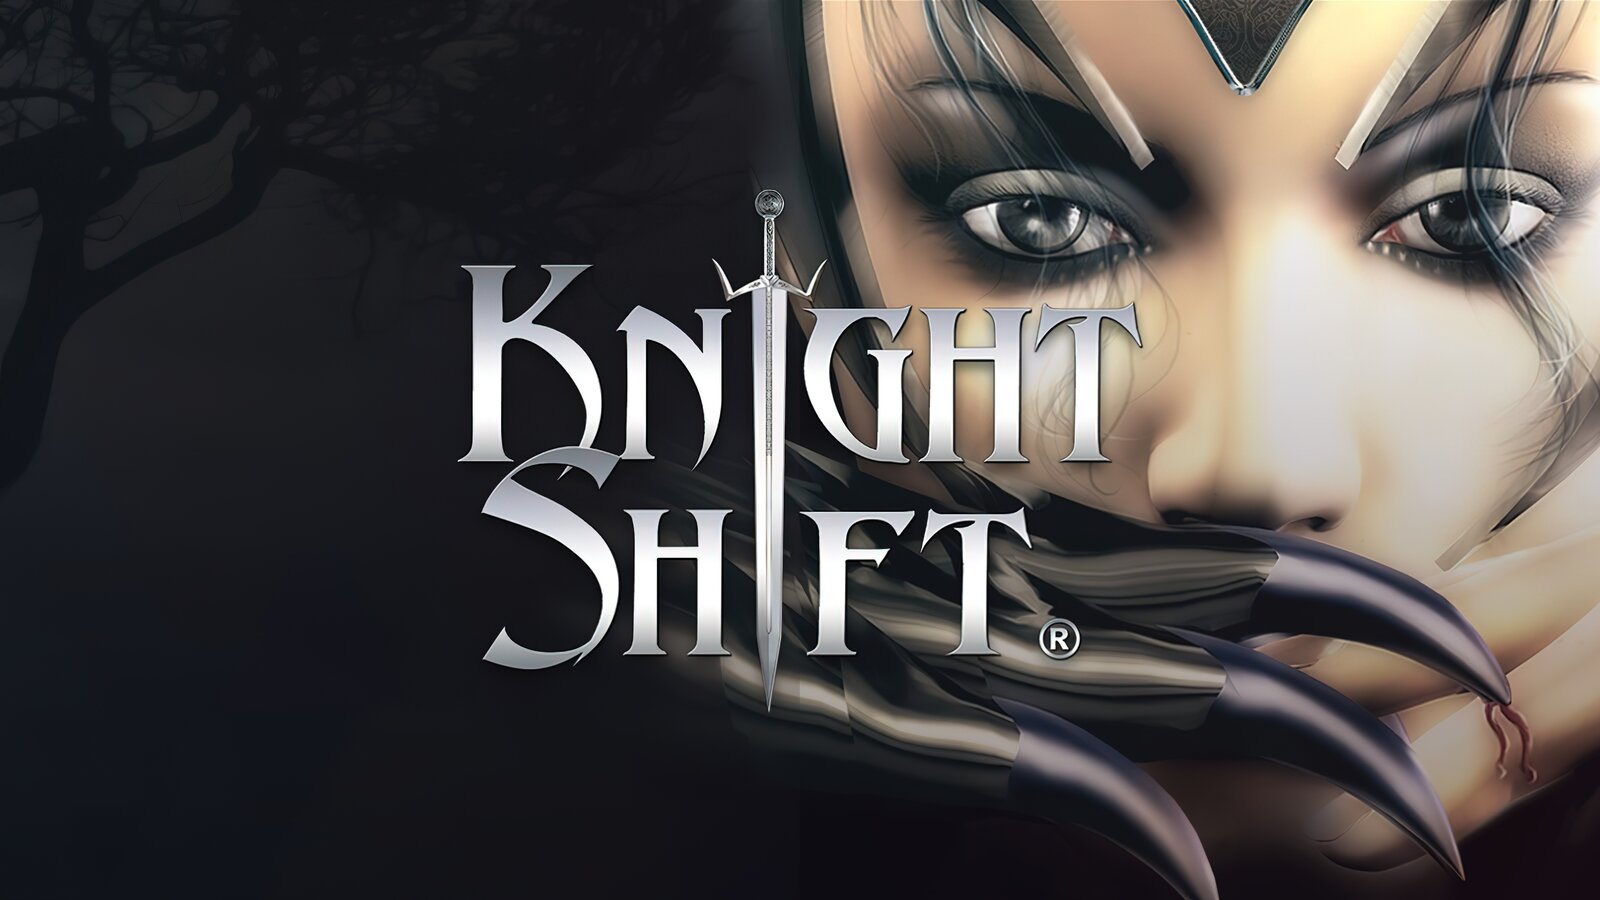 KnightShift